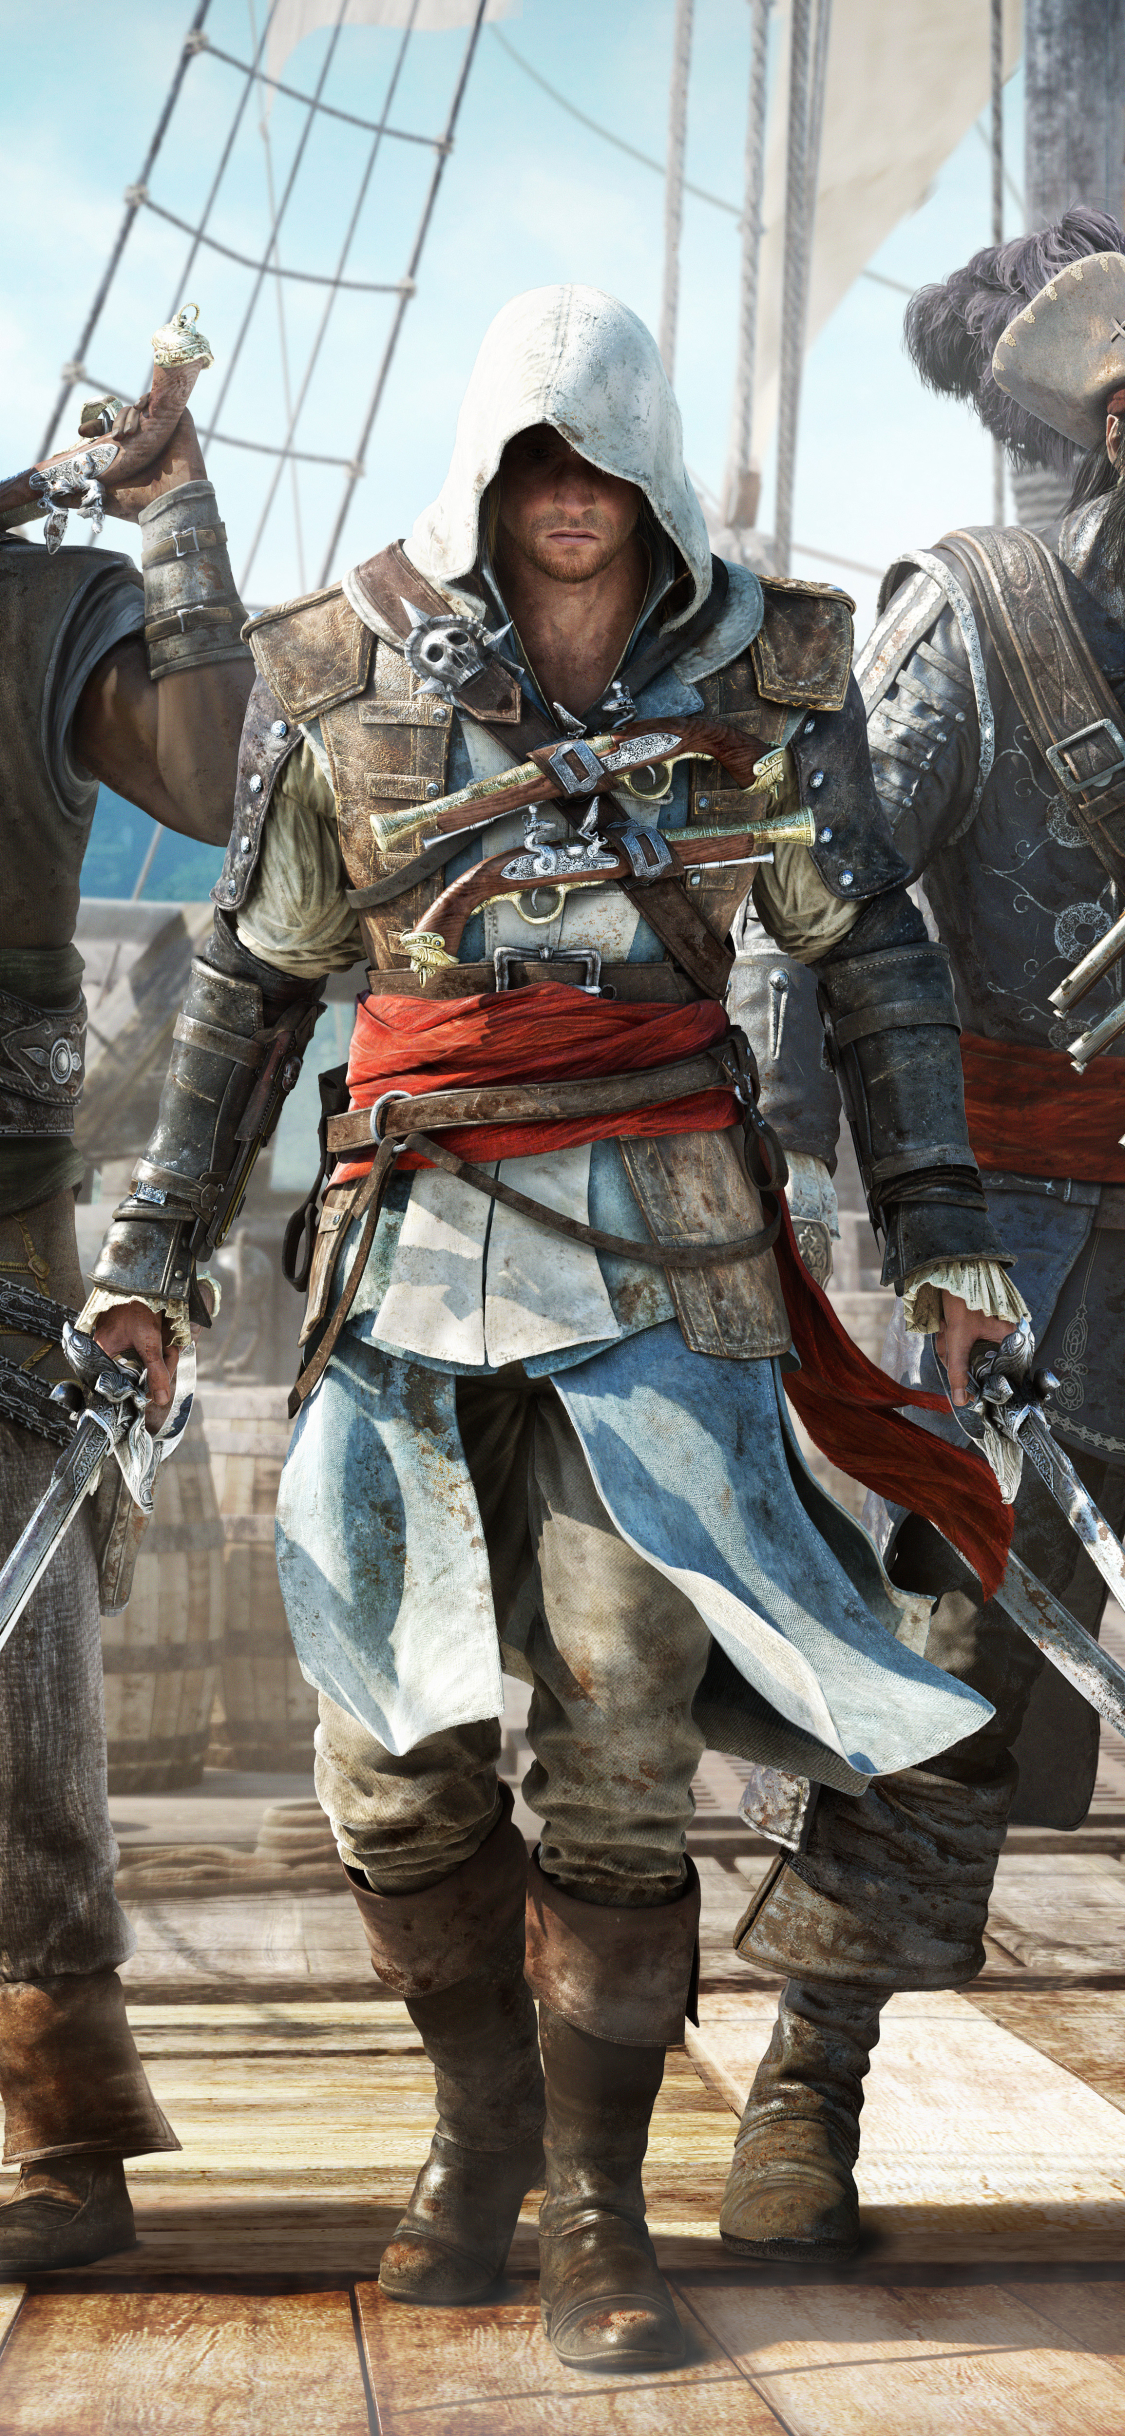 Descarga gratuita de fondo de pantalla para móvil de Videojuego, Assassin's Creed, Credo Del Asesino, Assassin's Creed Iv: Black Flag, Edward Kenway.